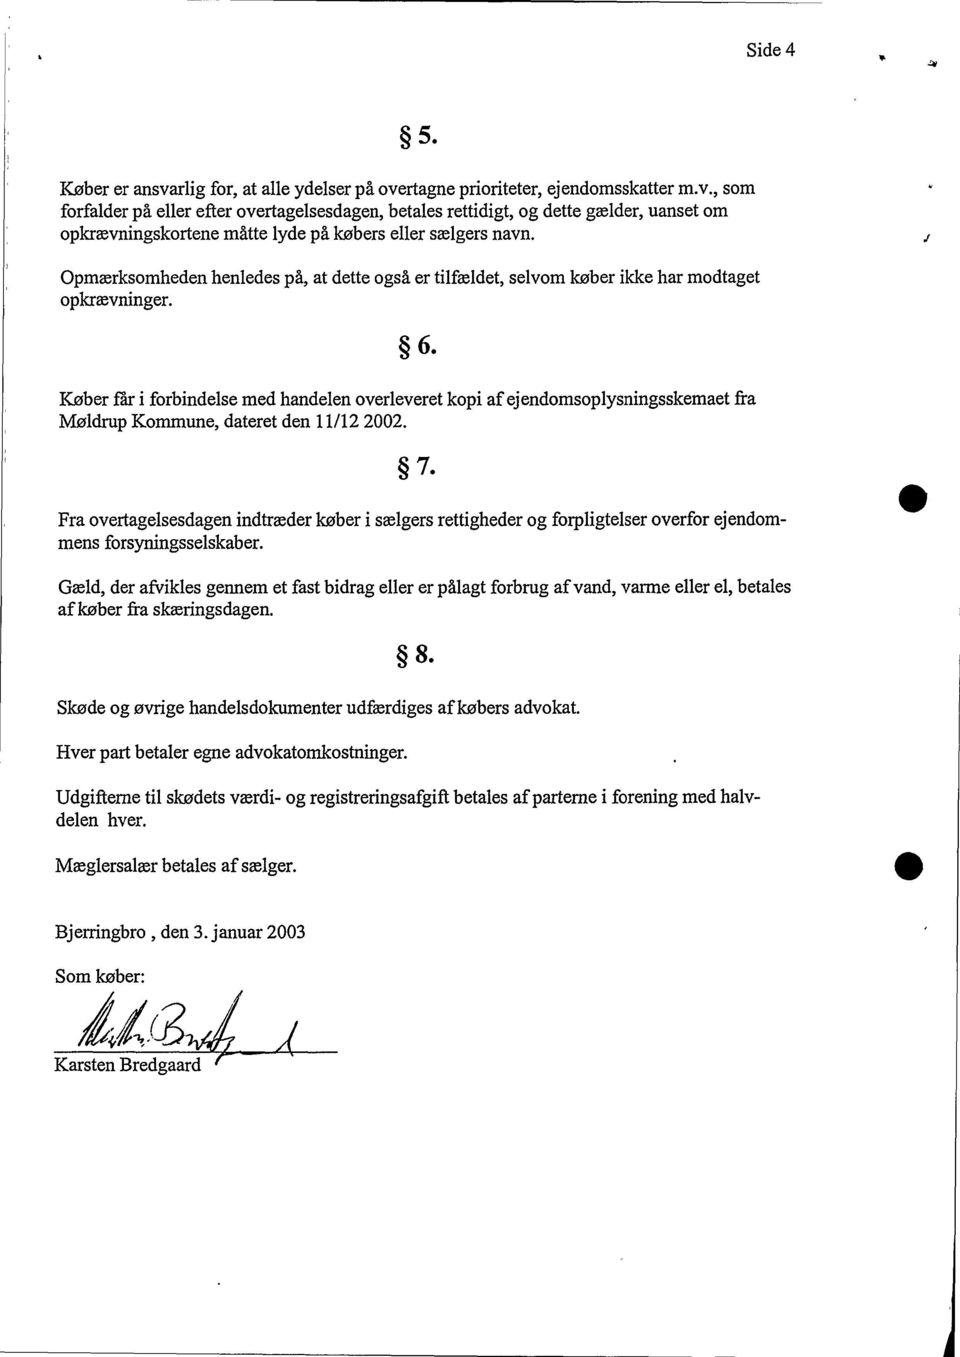 Køber får i forbindelse med handelen overleveret kopi af ejendomsoplysningsskemaet fra Møldrup Kommune, dateret den 11/12 2002. 7.